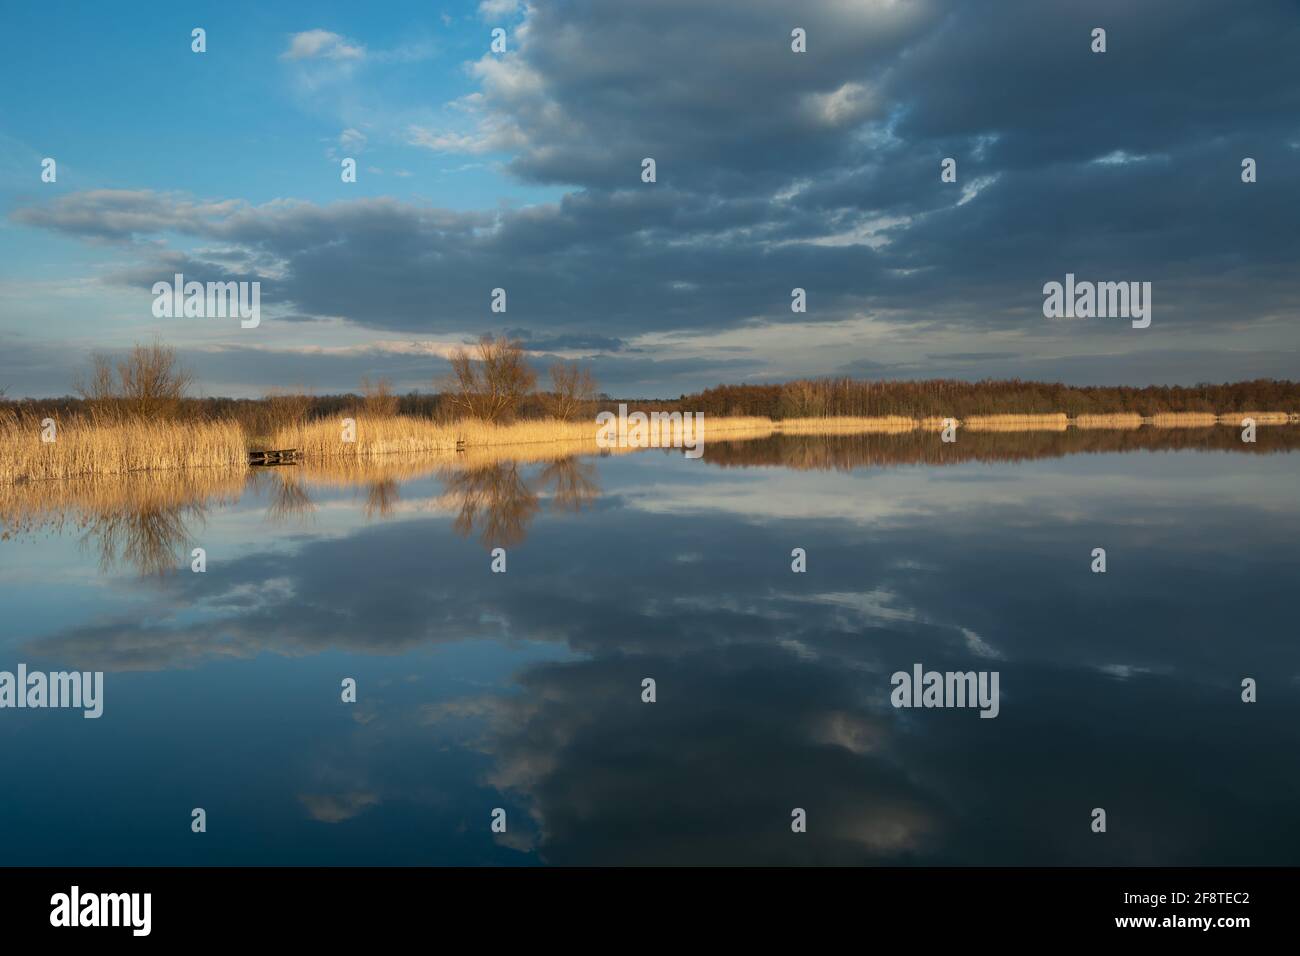 Spiegelbild dunkler Wolken im Wasser eines ruhigen Sees, Stankow, Lubelskie, Polen Stockfoto